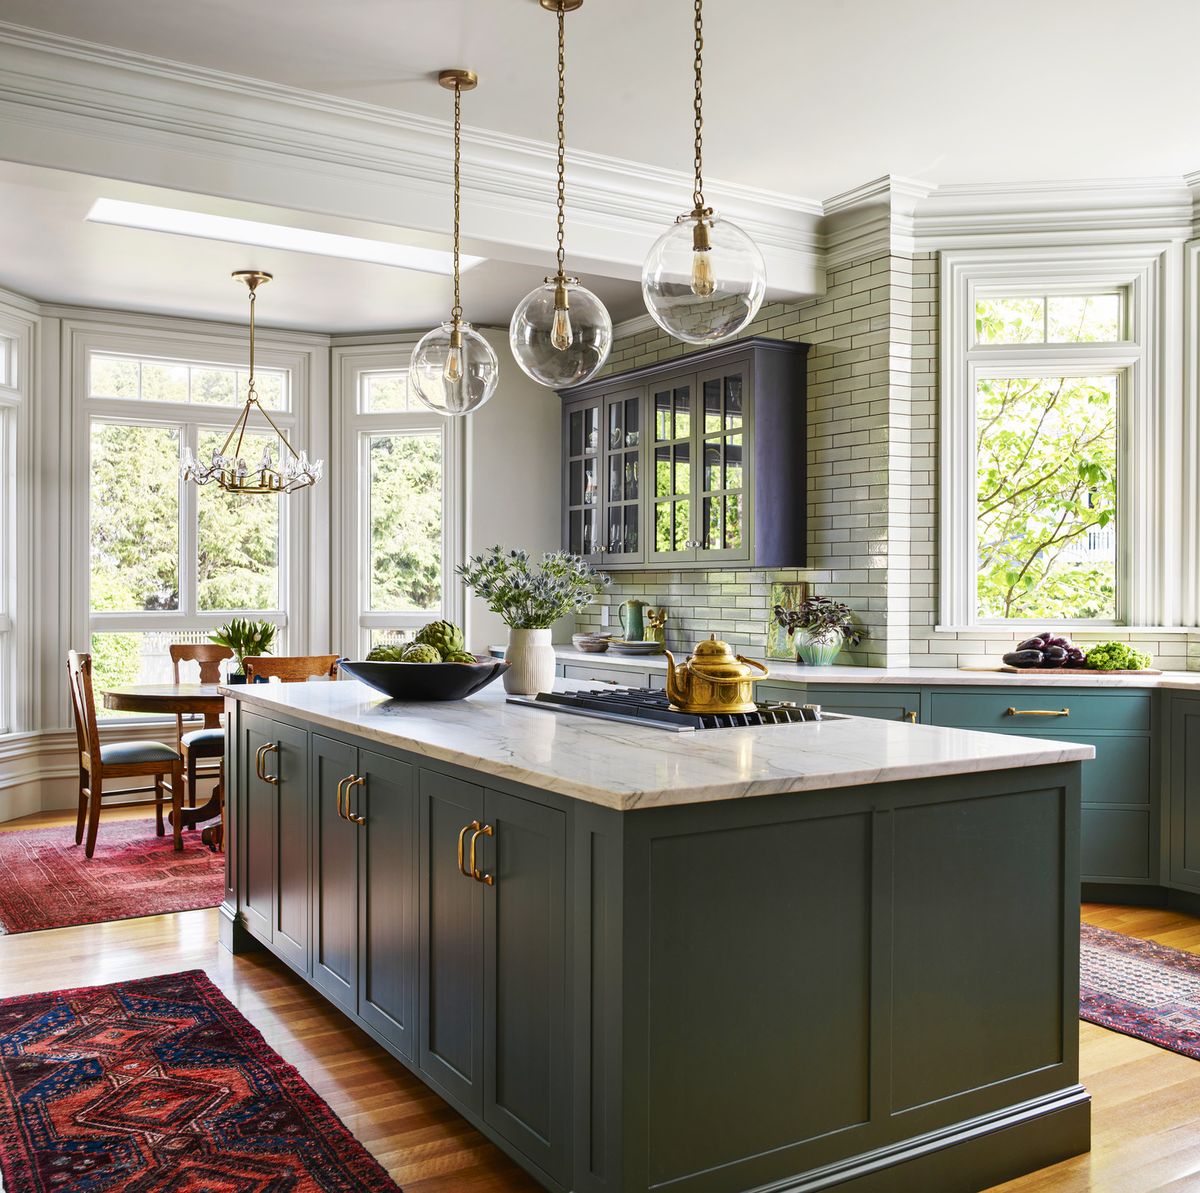 Entre estos muebles altos de cocina… ¿cuál va más con tu estilo?